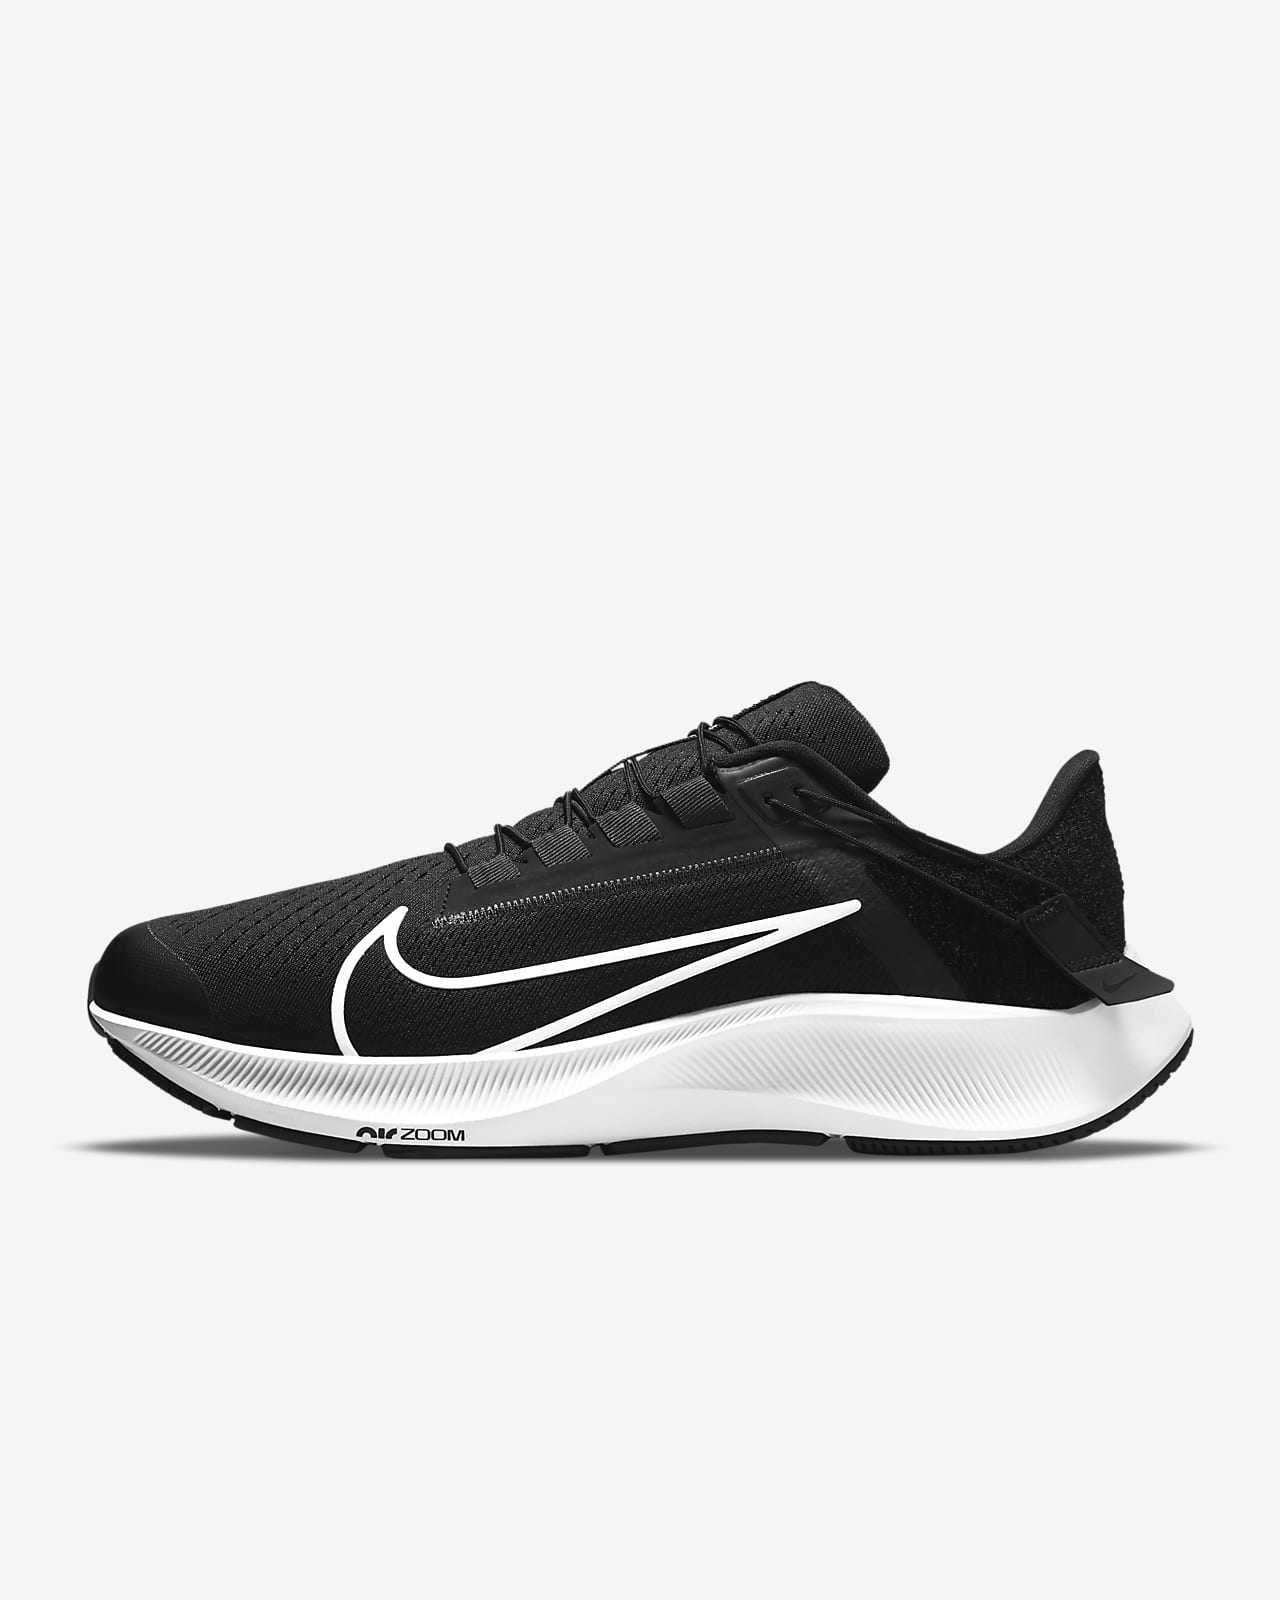 Ανδρικό παπούτσι για τρέξιμο σε δρόμο με εύκολη εφαρμογή/αφαίρεση Nike Air Zoom Pegasus 38 FlyEase (πολύ φαρδύ)